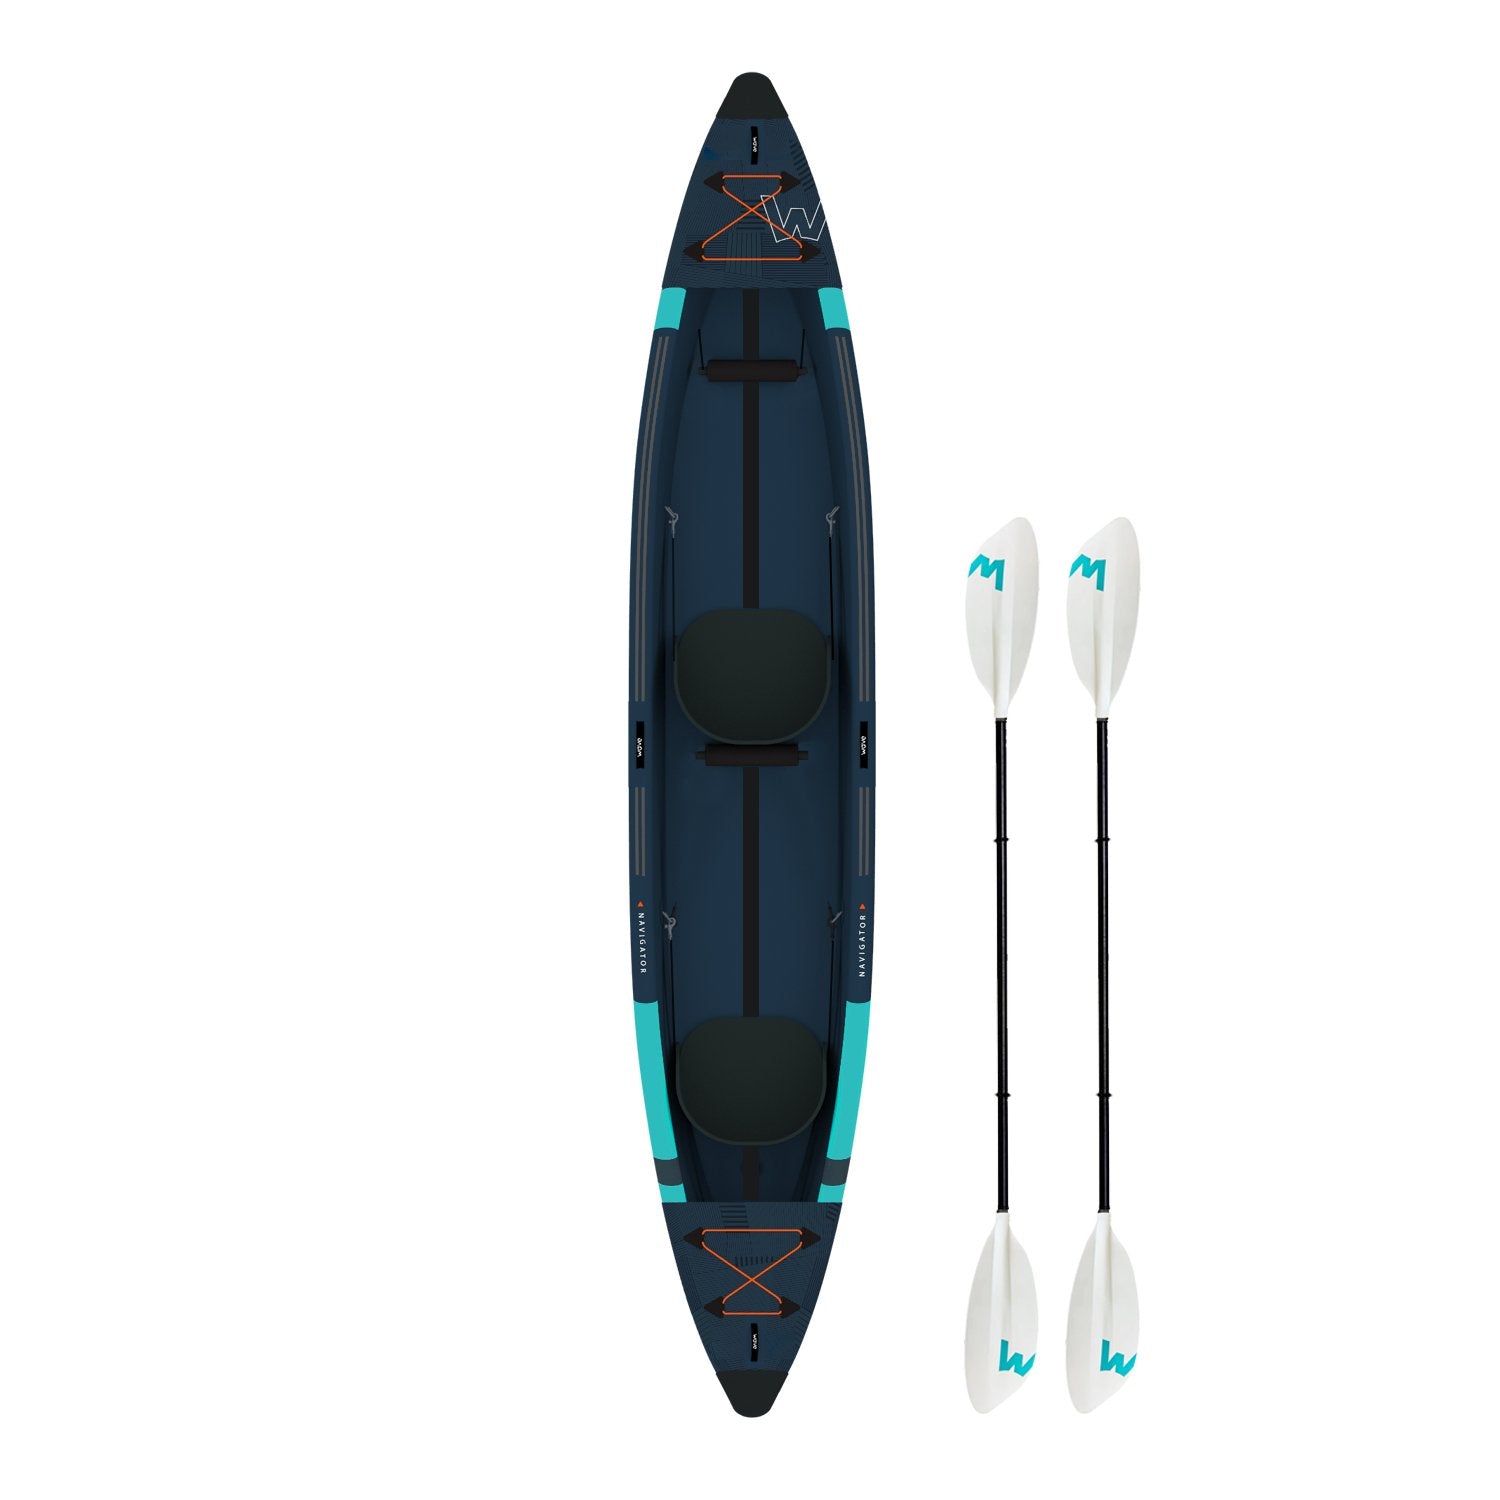 Navigator | Inflatable Kayak | Drop-Stitch | 2-Seater - Wave Sups UK